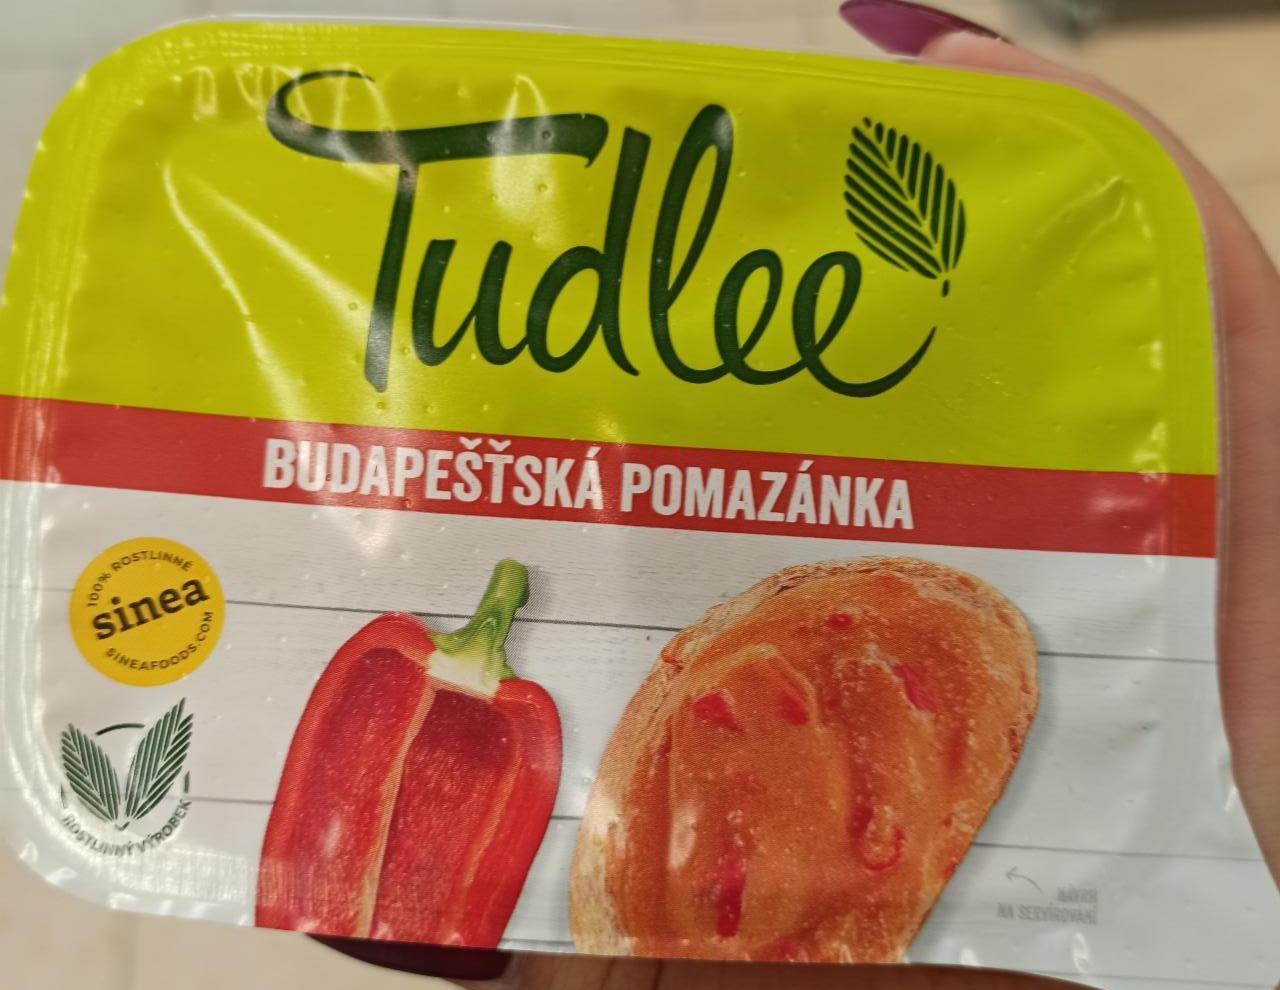 Fotografie - Budapešťská pomazánka Tudlee